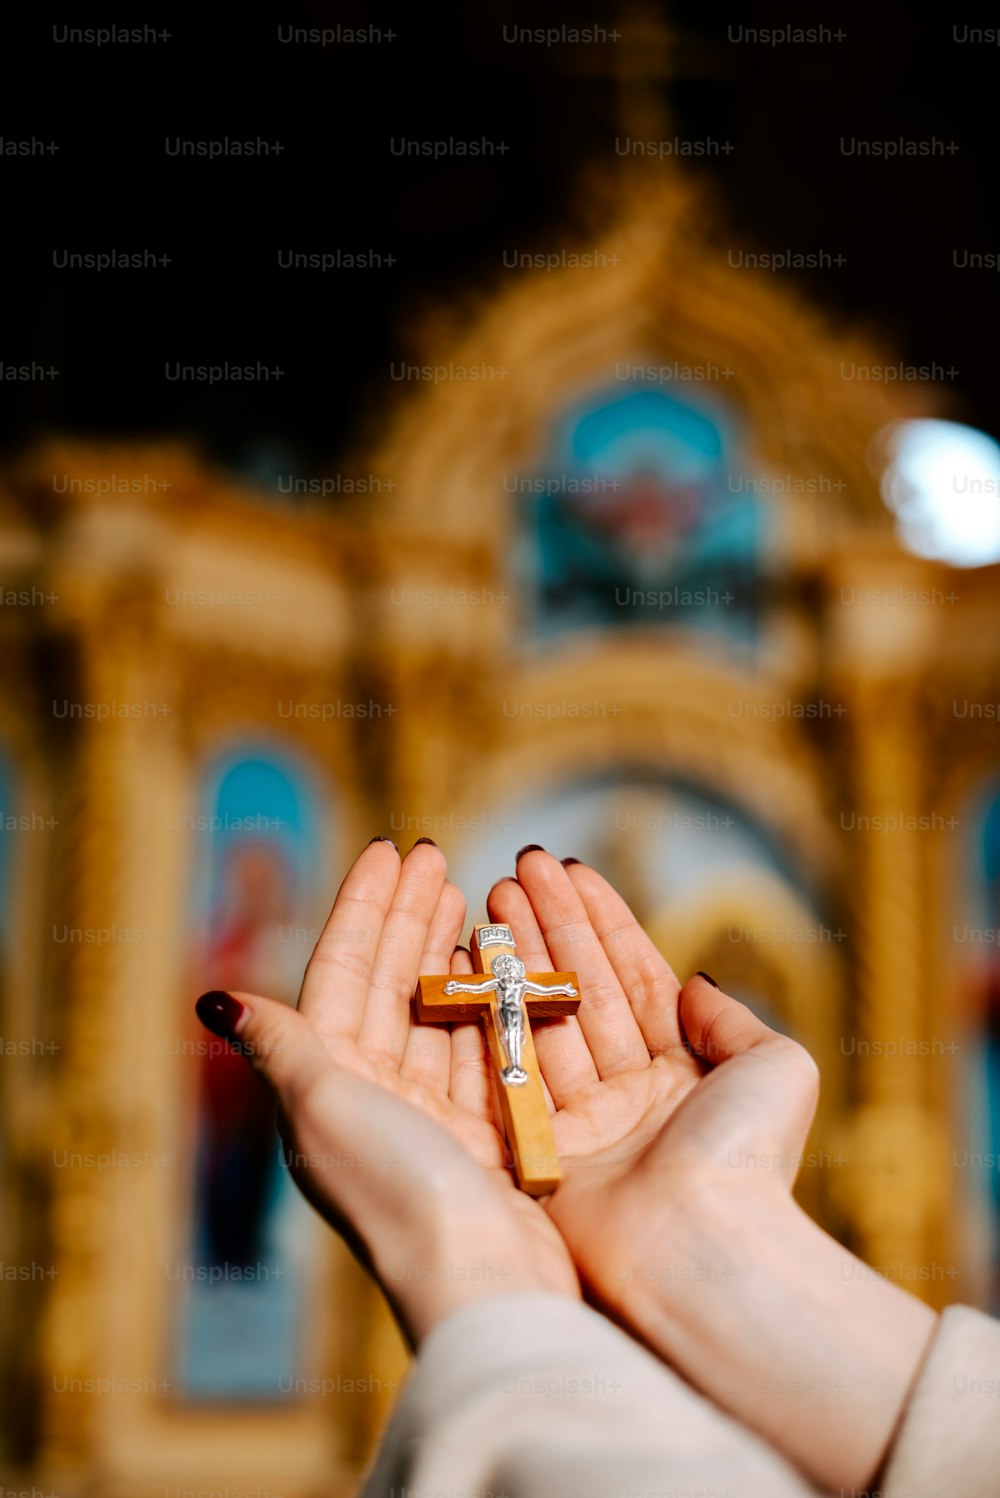 una persona sosteniendo una cruz en sus manos